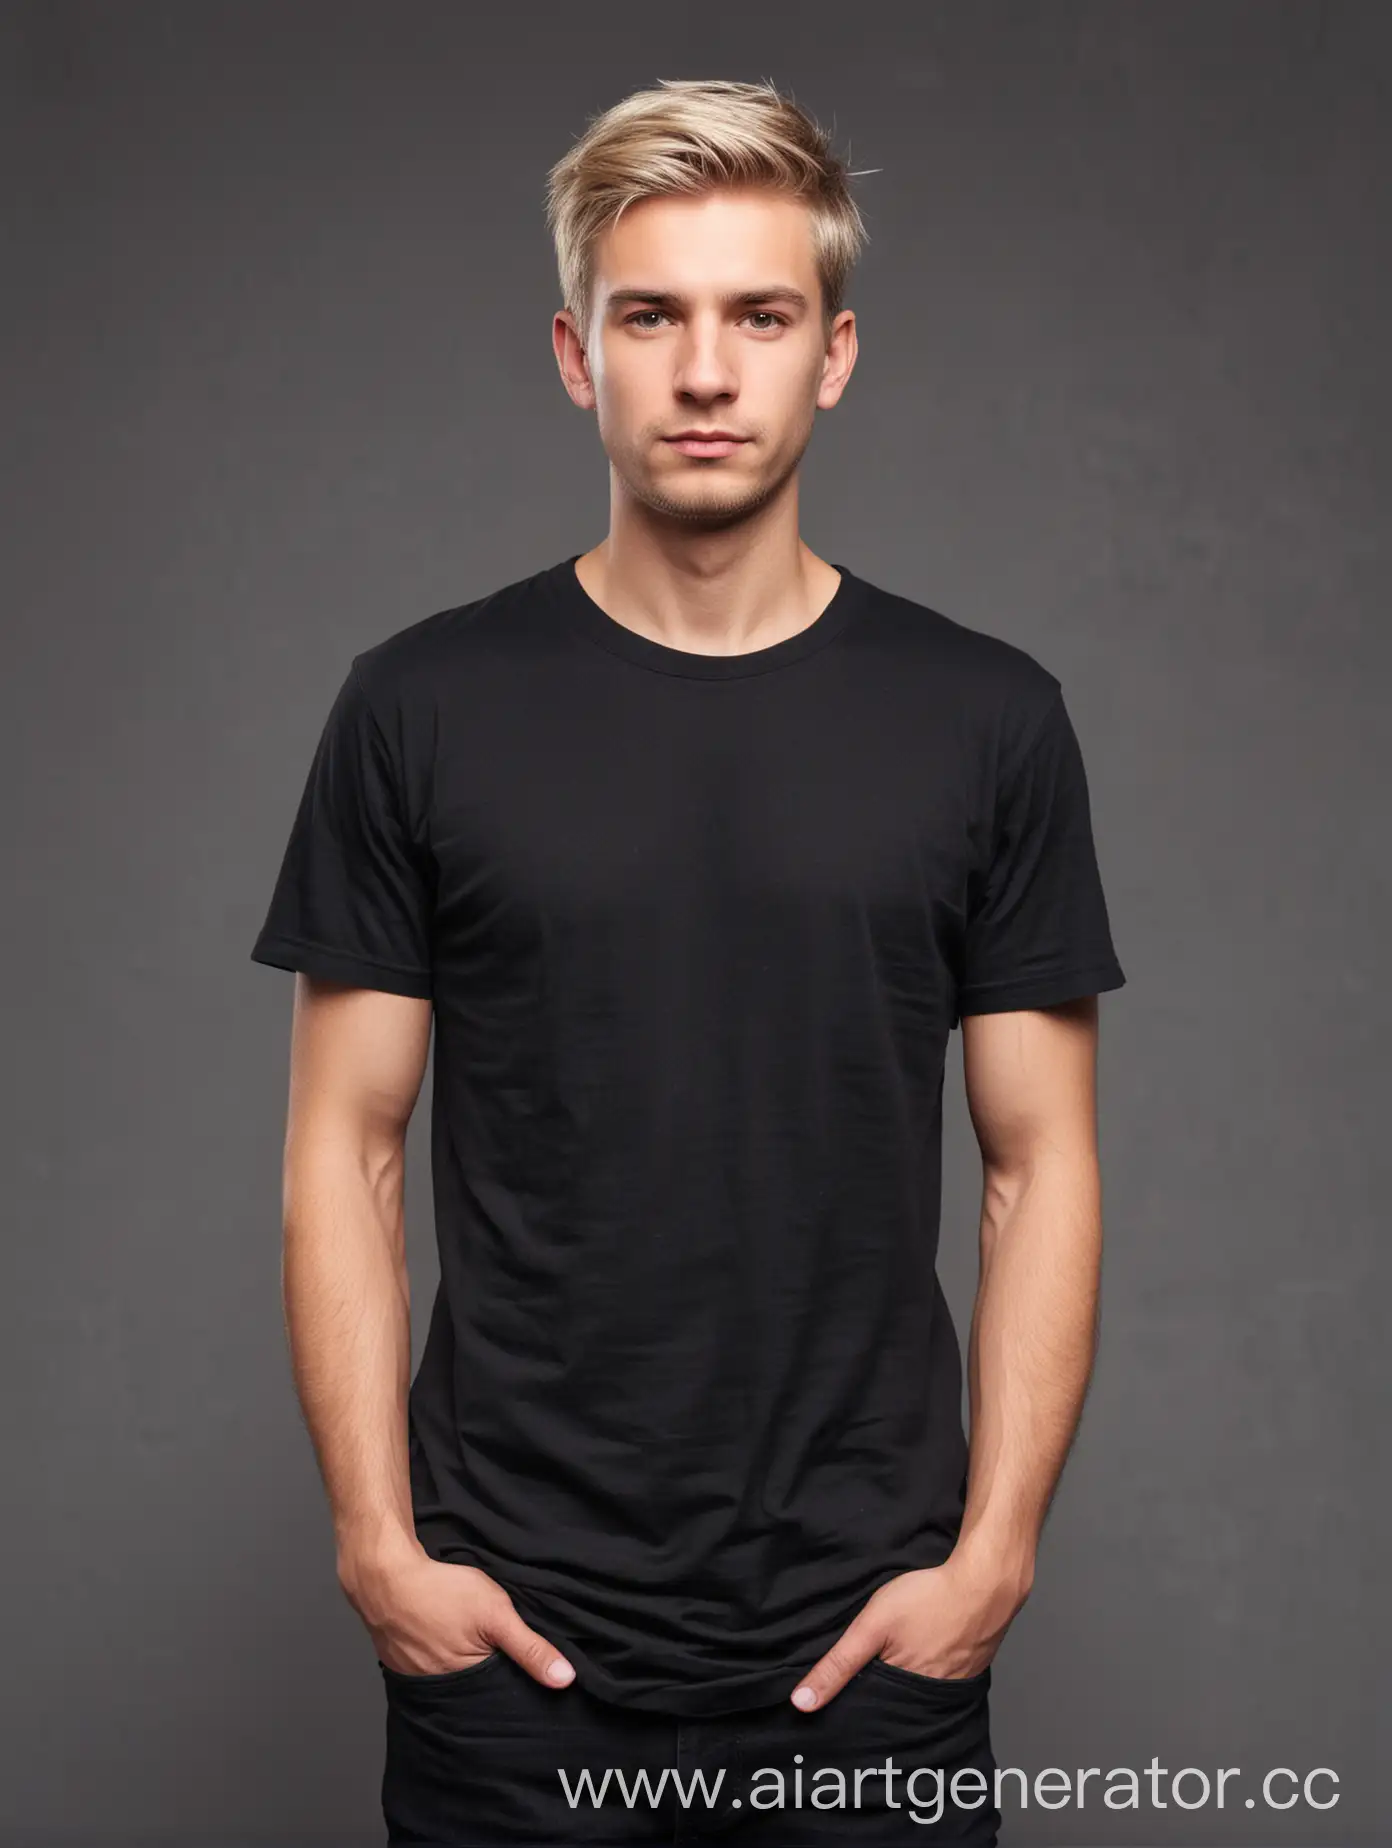 Мужчина в чёрной футболке —>мужчина с светлыми волосами среднего телосложения 25 лет стоит в чёрной футболке на сером фоне по пояс